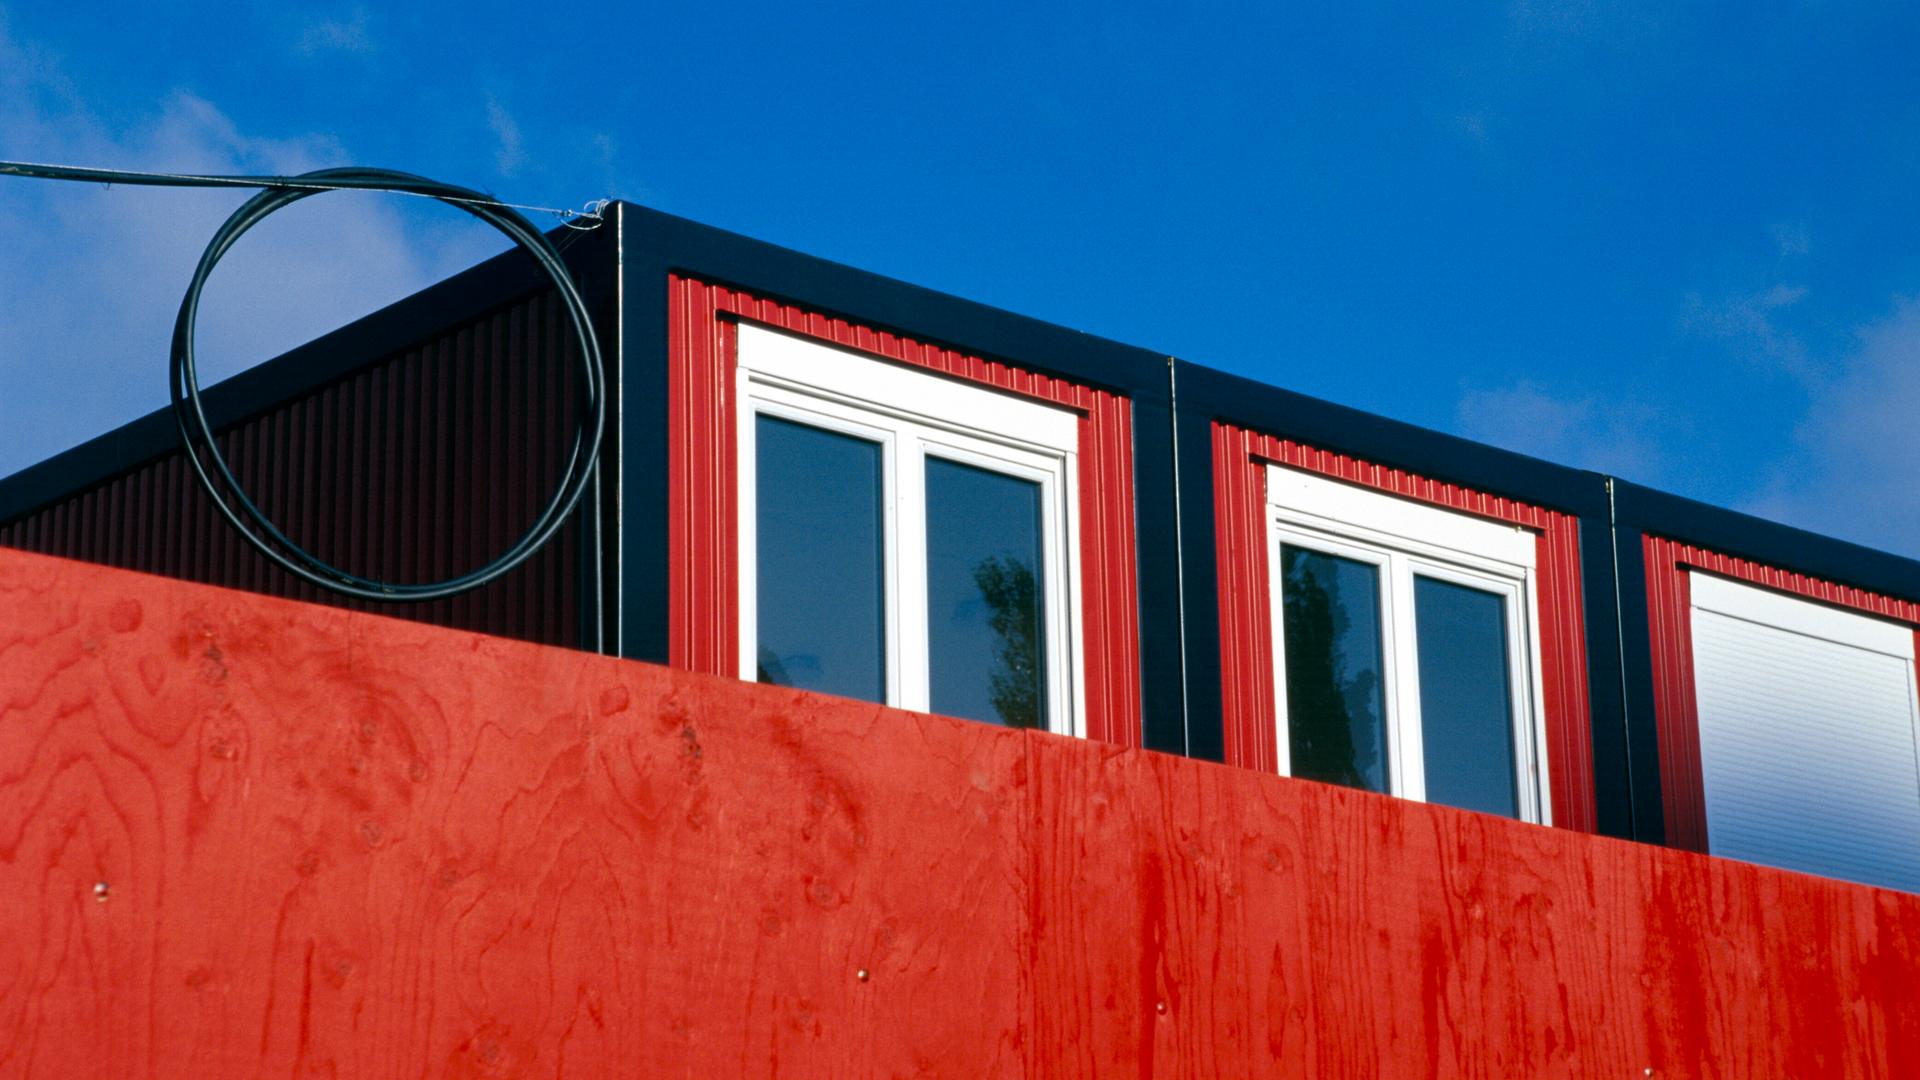 Hinter einer roten Wand ist der obere Teil eines Wohncontainers zu erkennen.